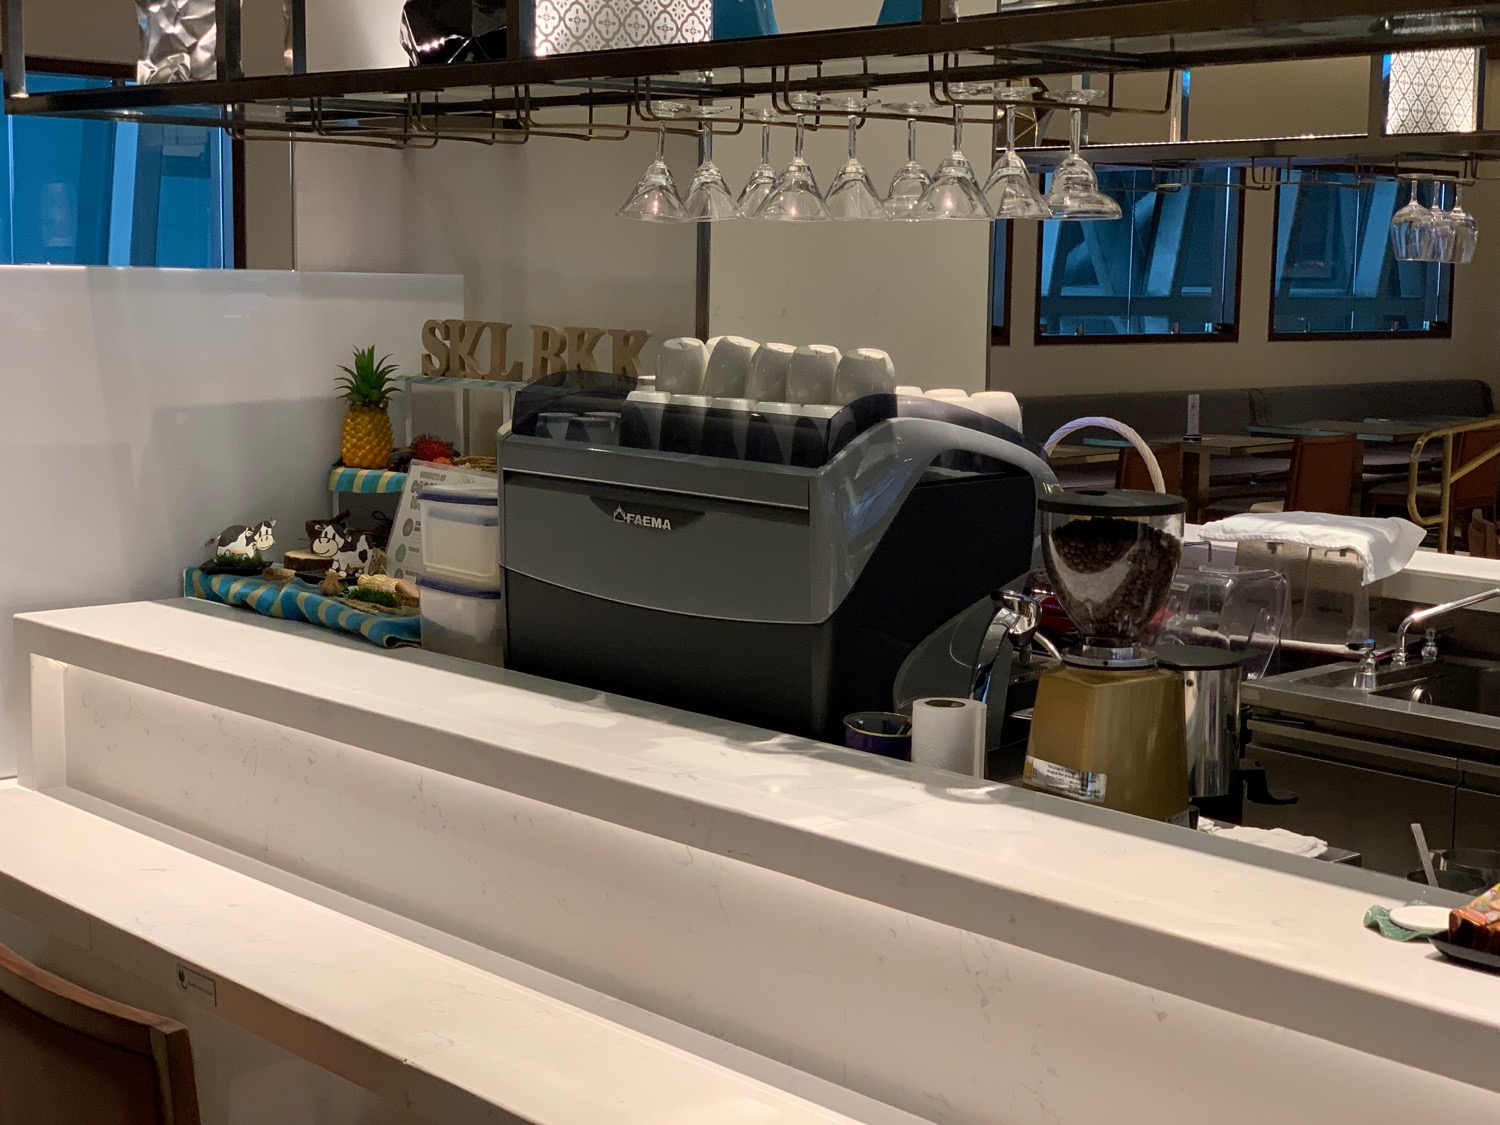 a coffee machine in a restaurant